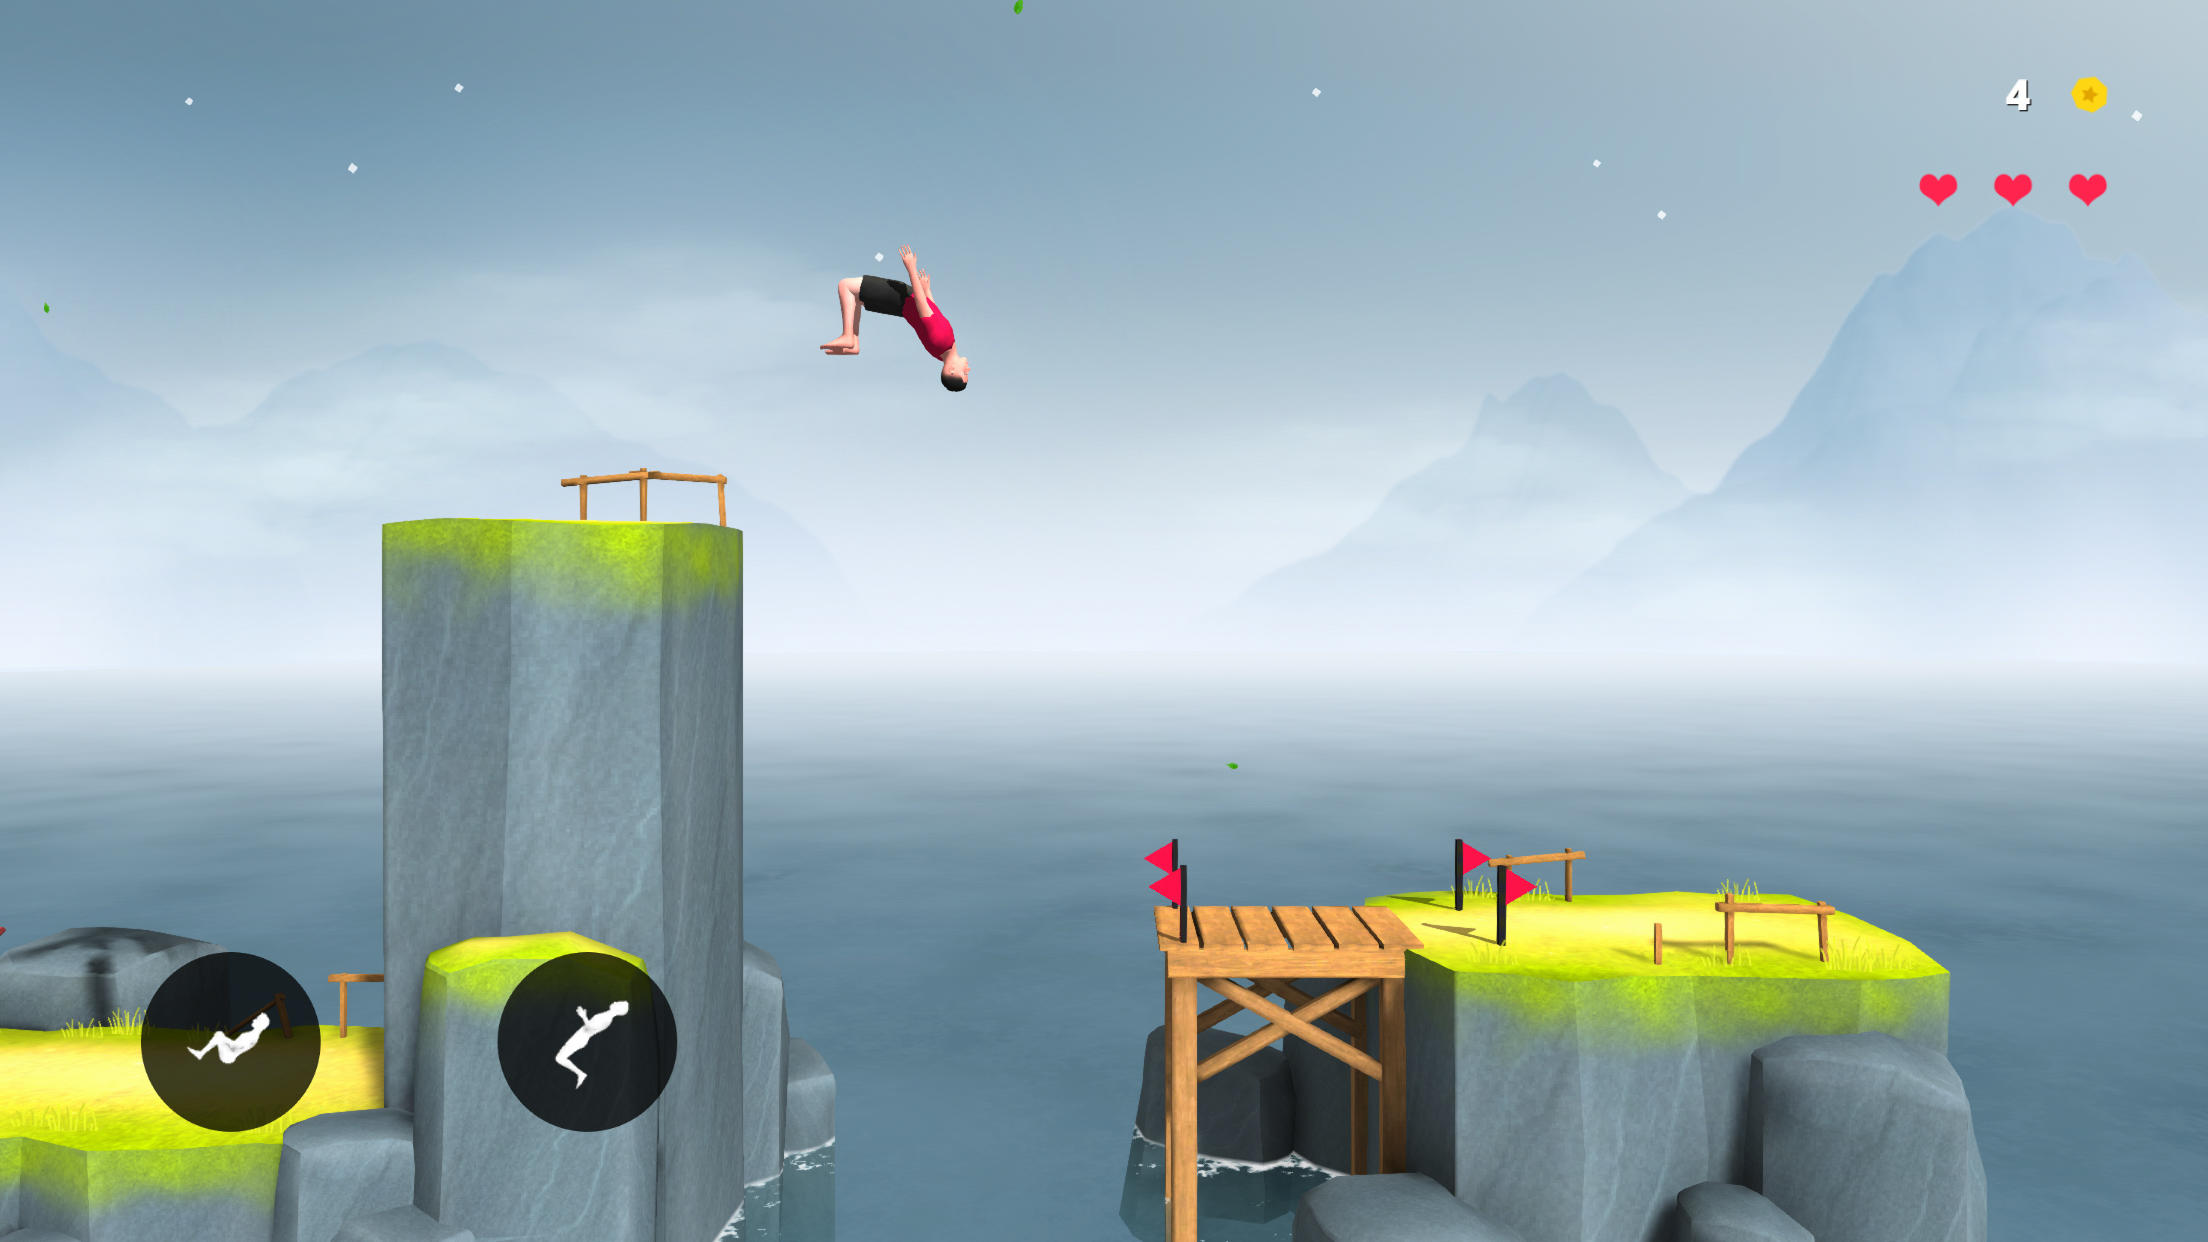 Flip Range 2 screenshot game